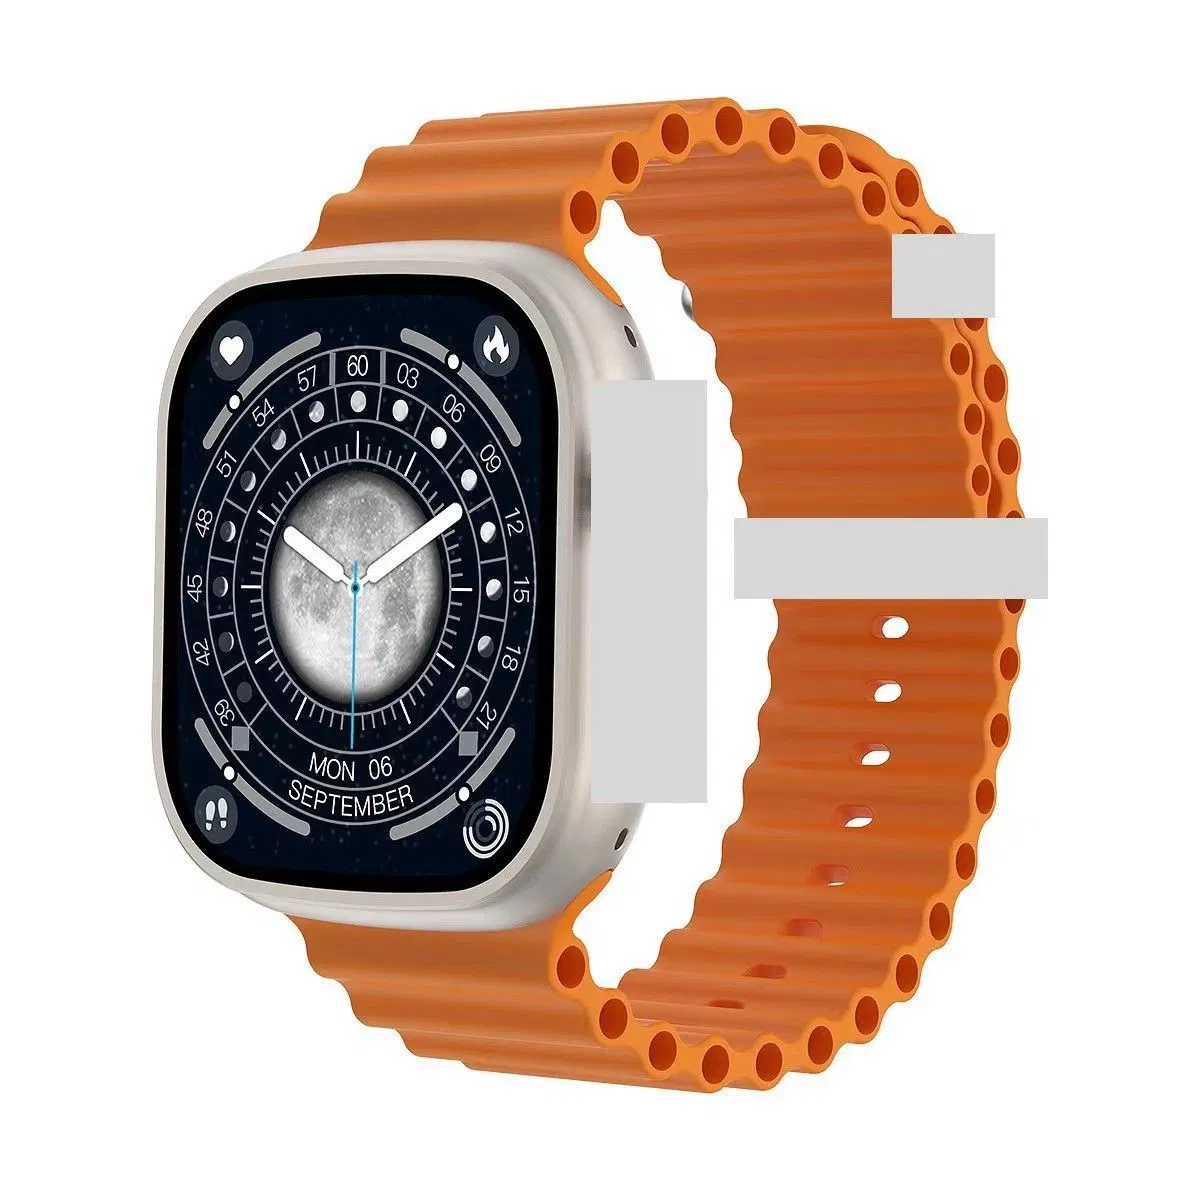 Ersetzen Sie Die Smartwatch Mit Orangefarbener Silikonhülle